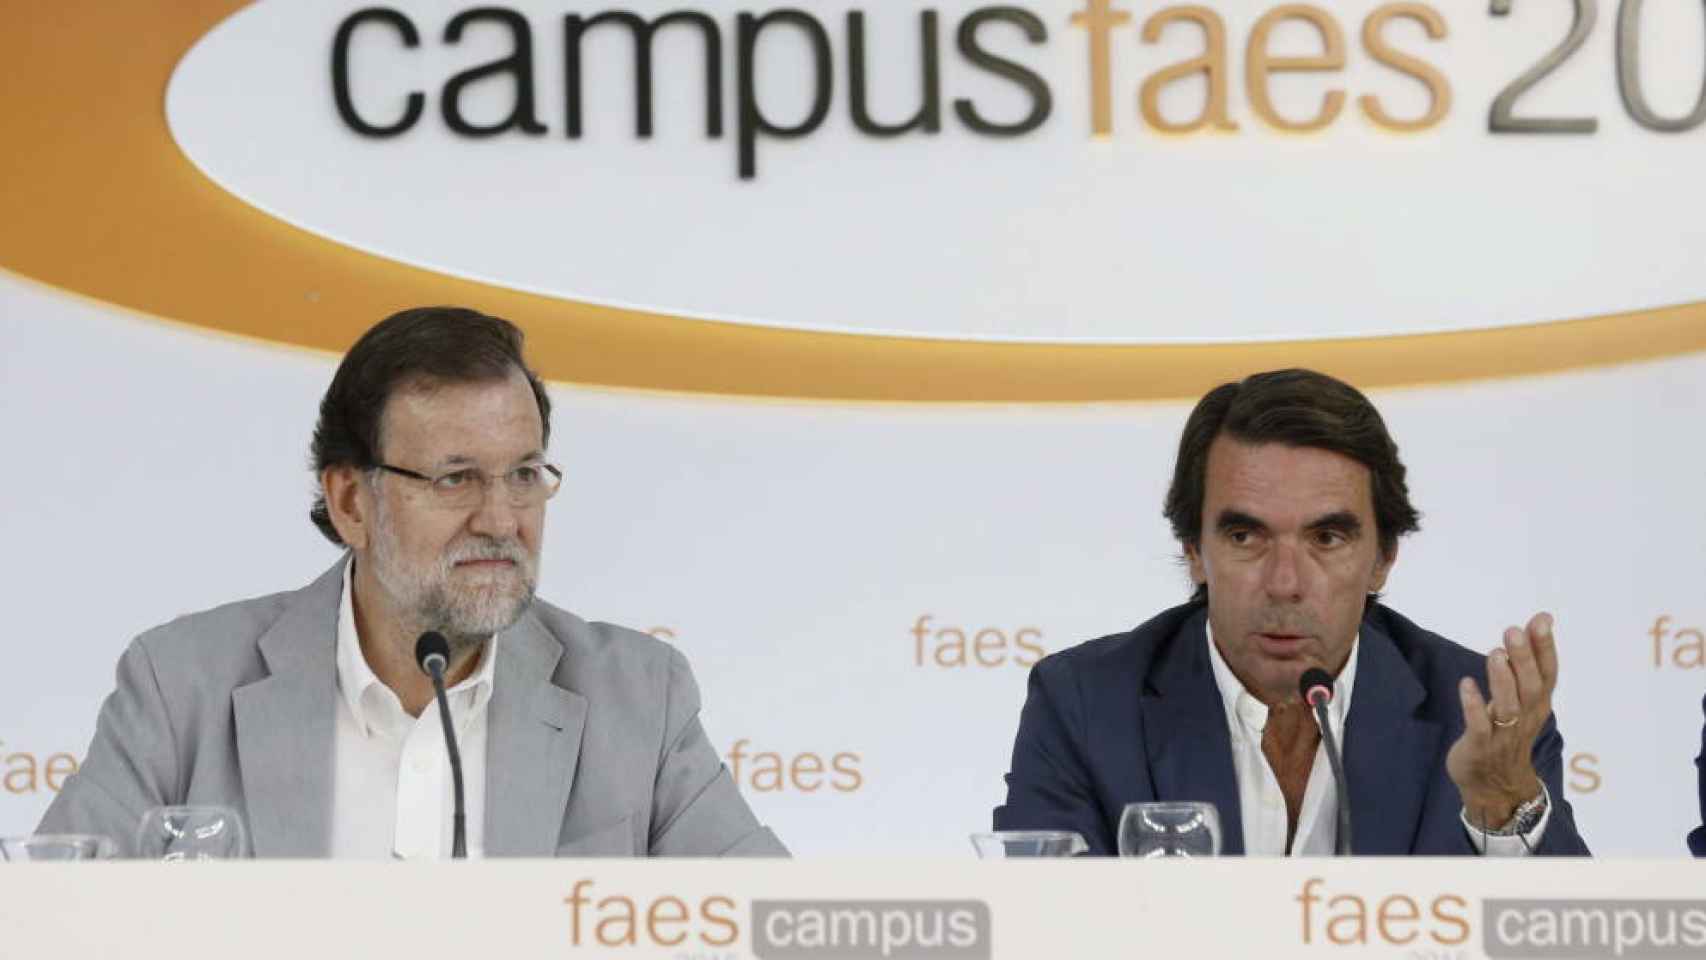 El expresidente José María Aznar con el presidente Mariano Rajoy en el Campus Faes.